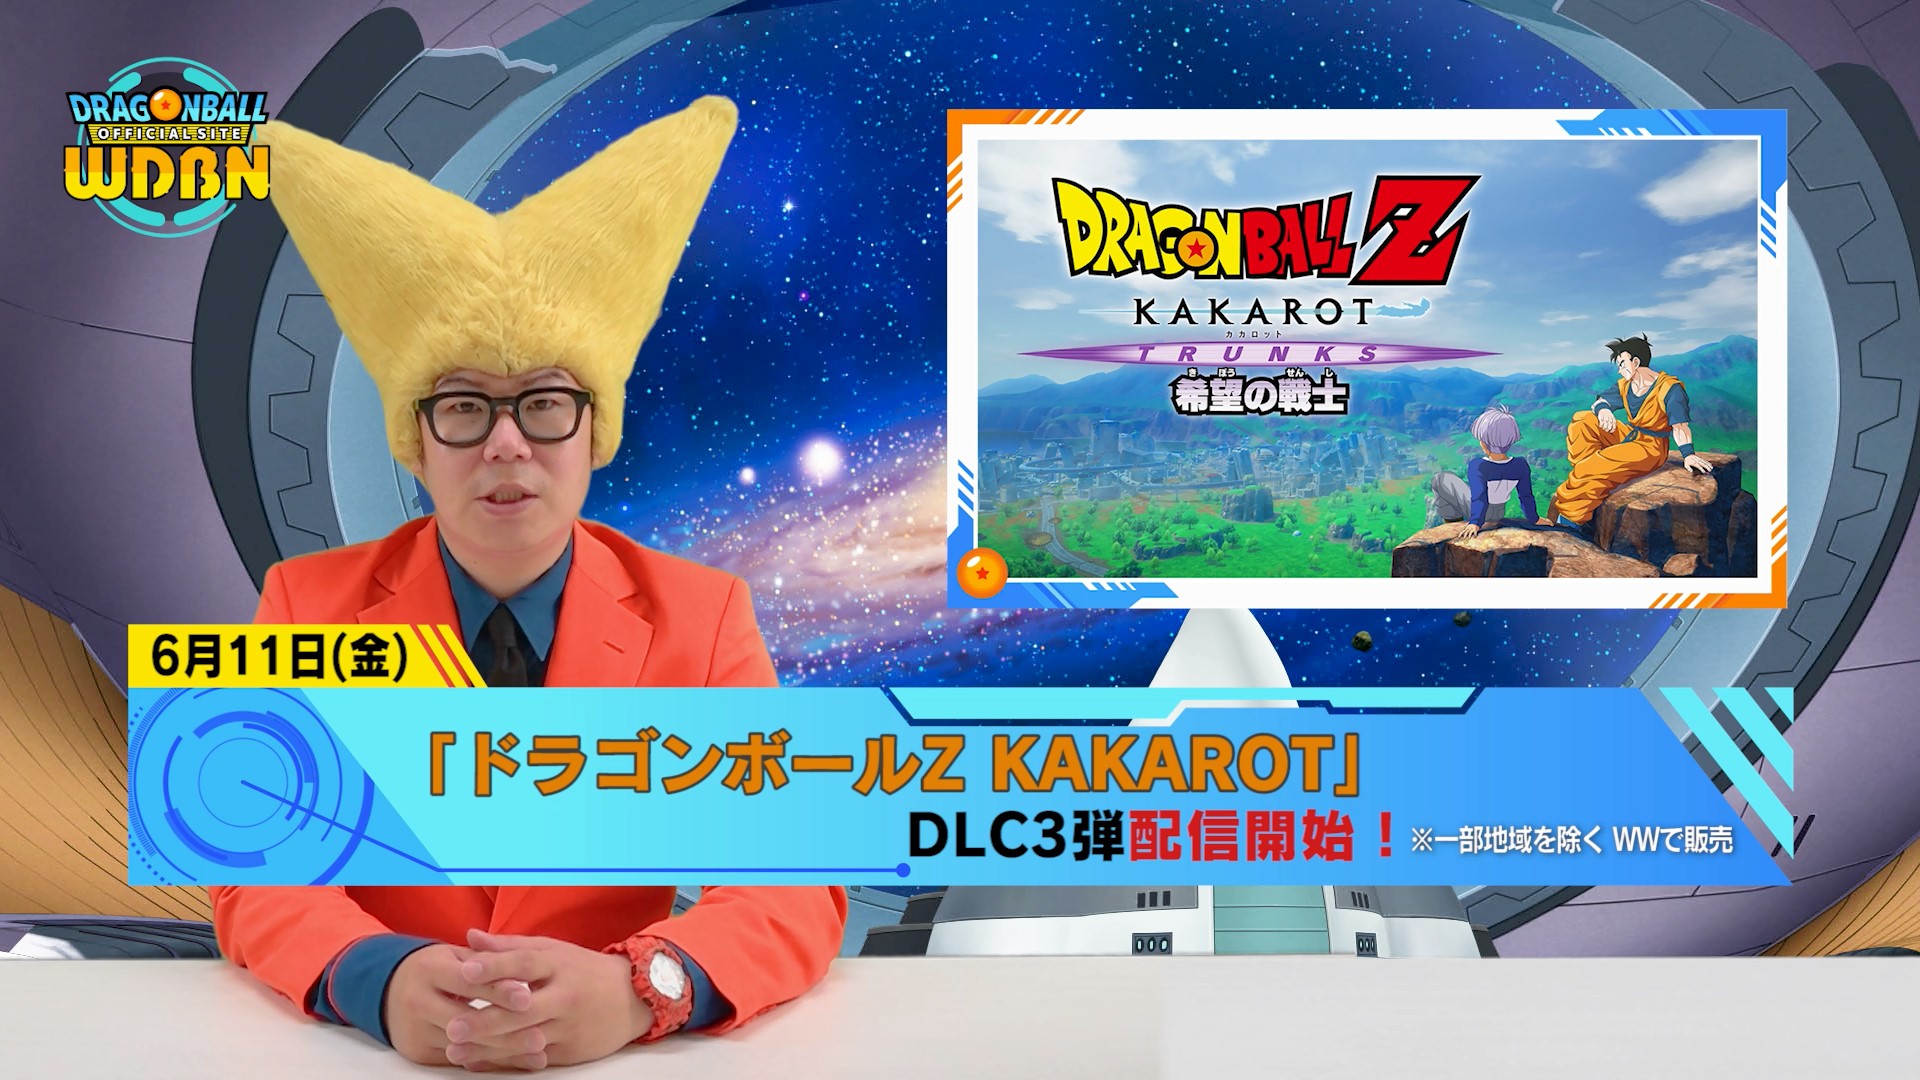 [7 juin] Diffusion Nouvelles hebdomadaires Dragon Ball !